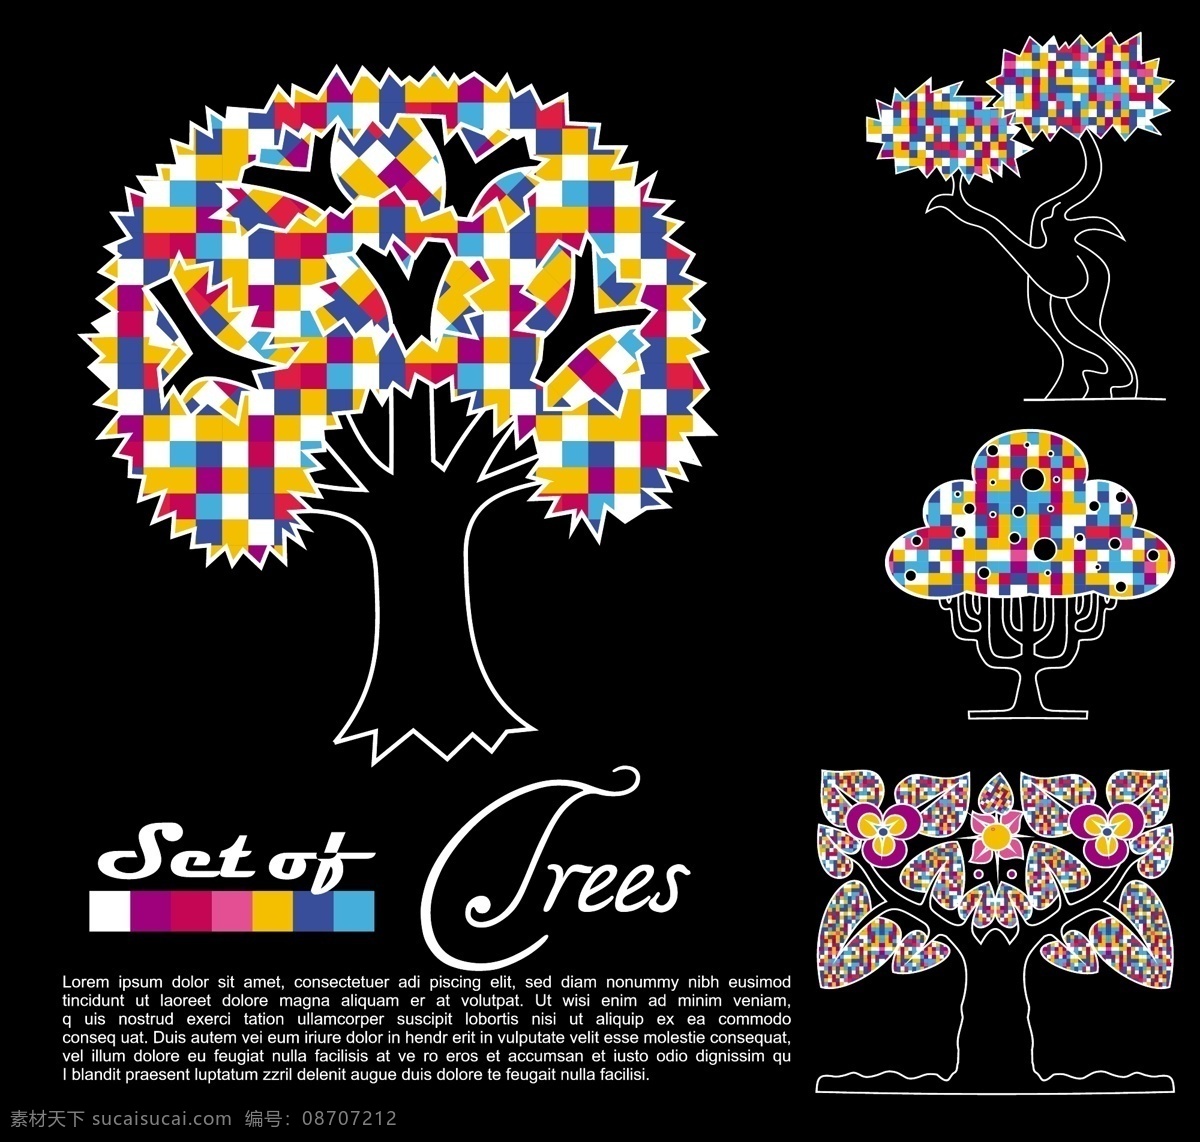 炫彩 树木 图案 背景 抽象 拼图 矢量素材 矢量图 花纹花边